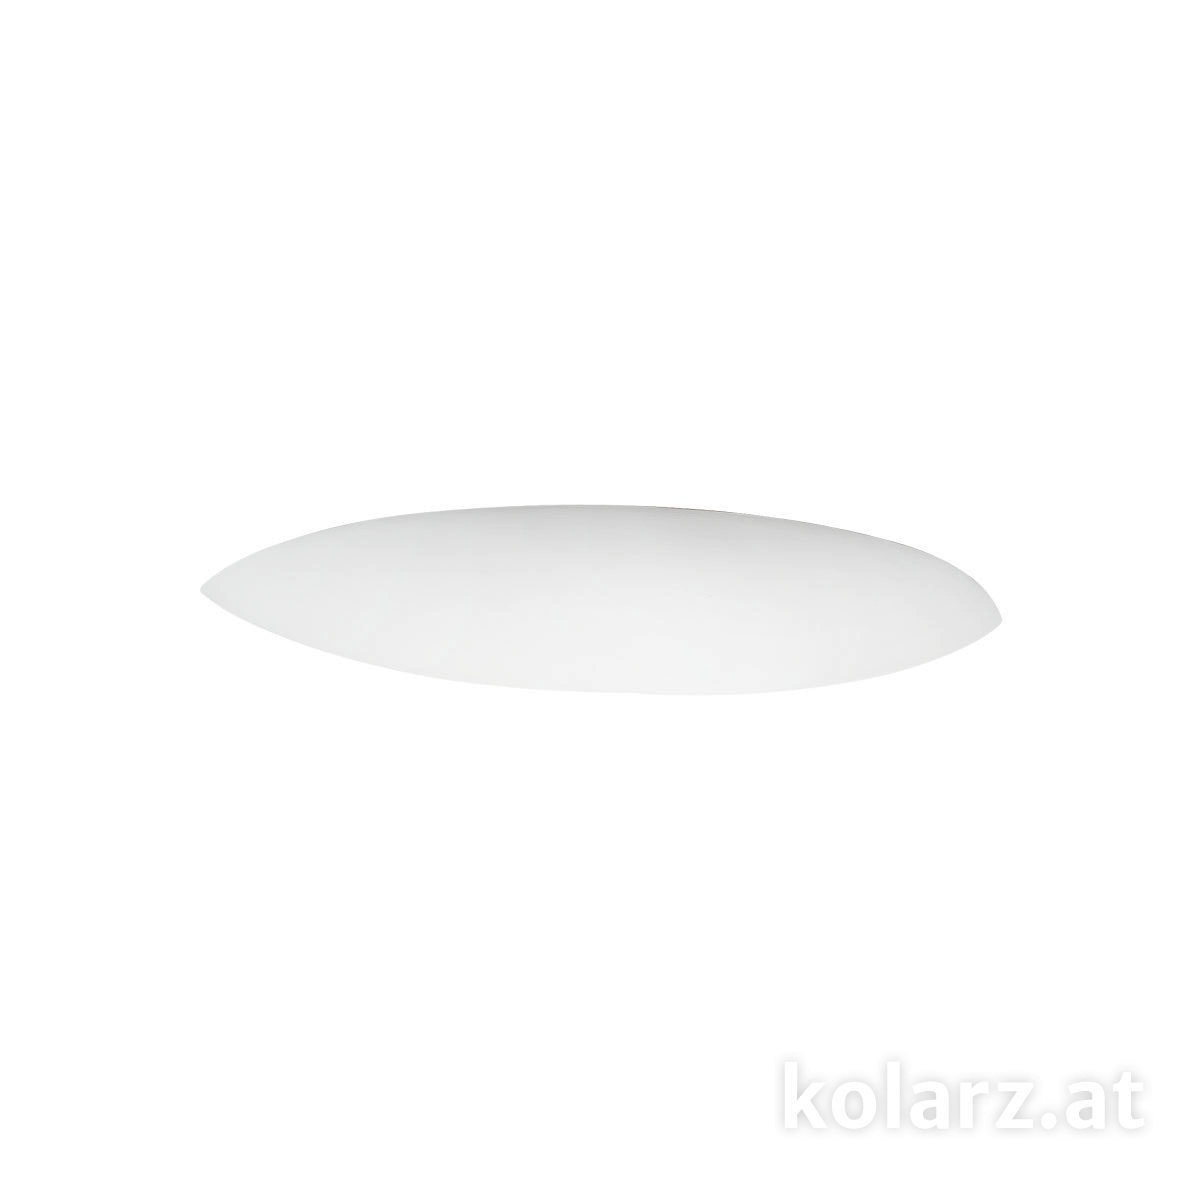 KOLARZ Leuchten Sonderangebote - Sale bei Wandlampen & Wandleuchten von KOLARZ Leuchten Elegance Wandleuchte 219.60.1